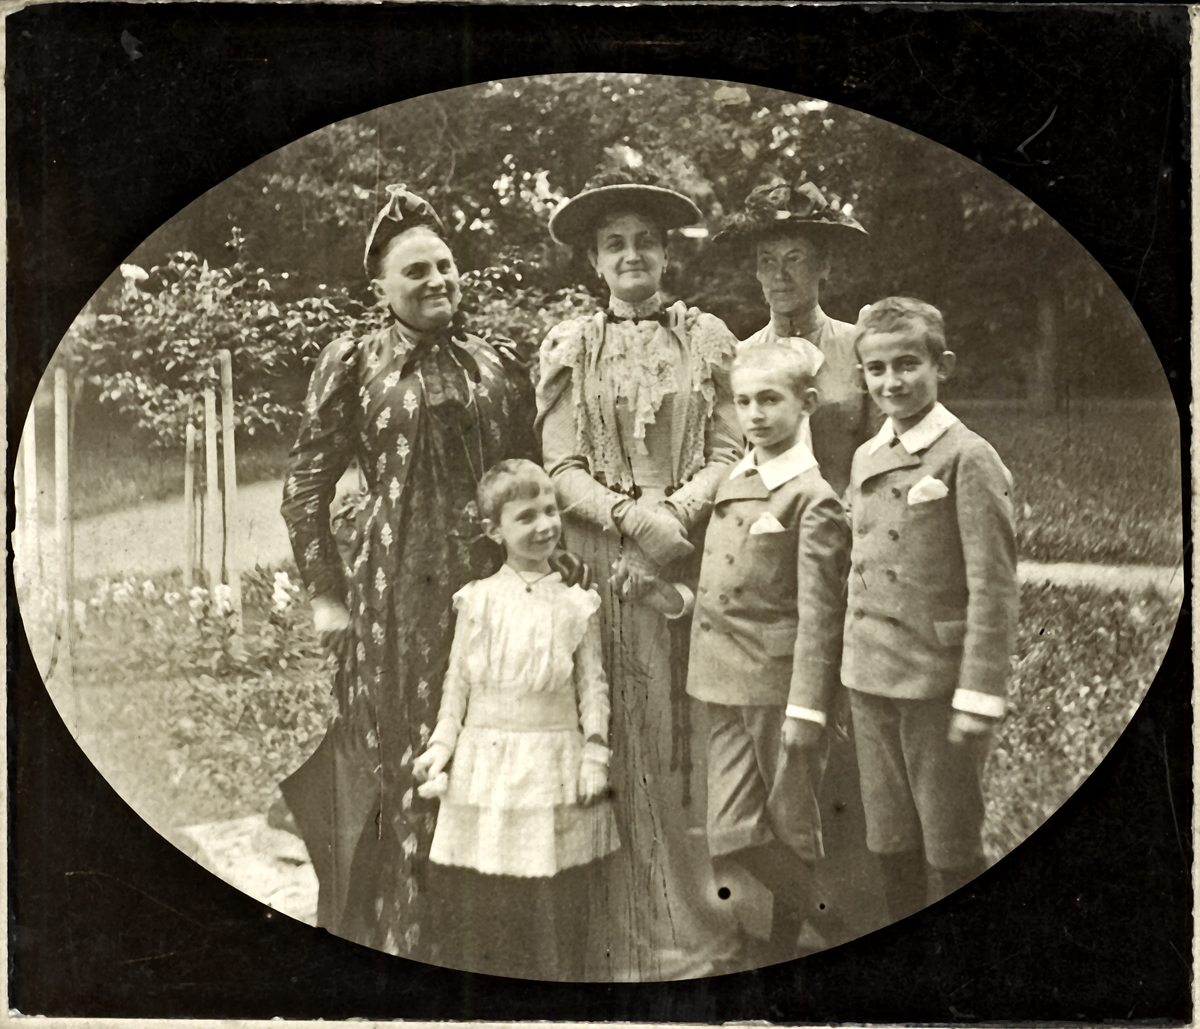 Ismeretlen: Hatvany Lajos anyjával, Paula nagyanyjával, testvéreivel | Library OPAC